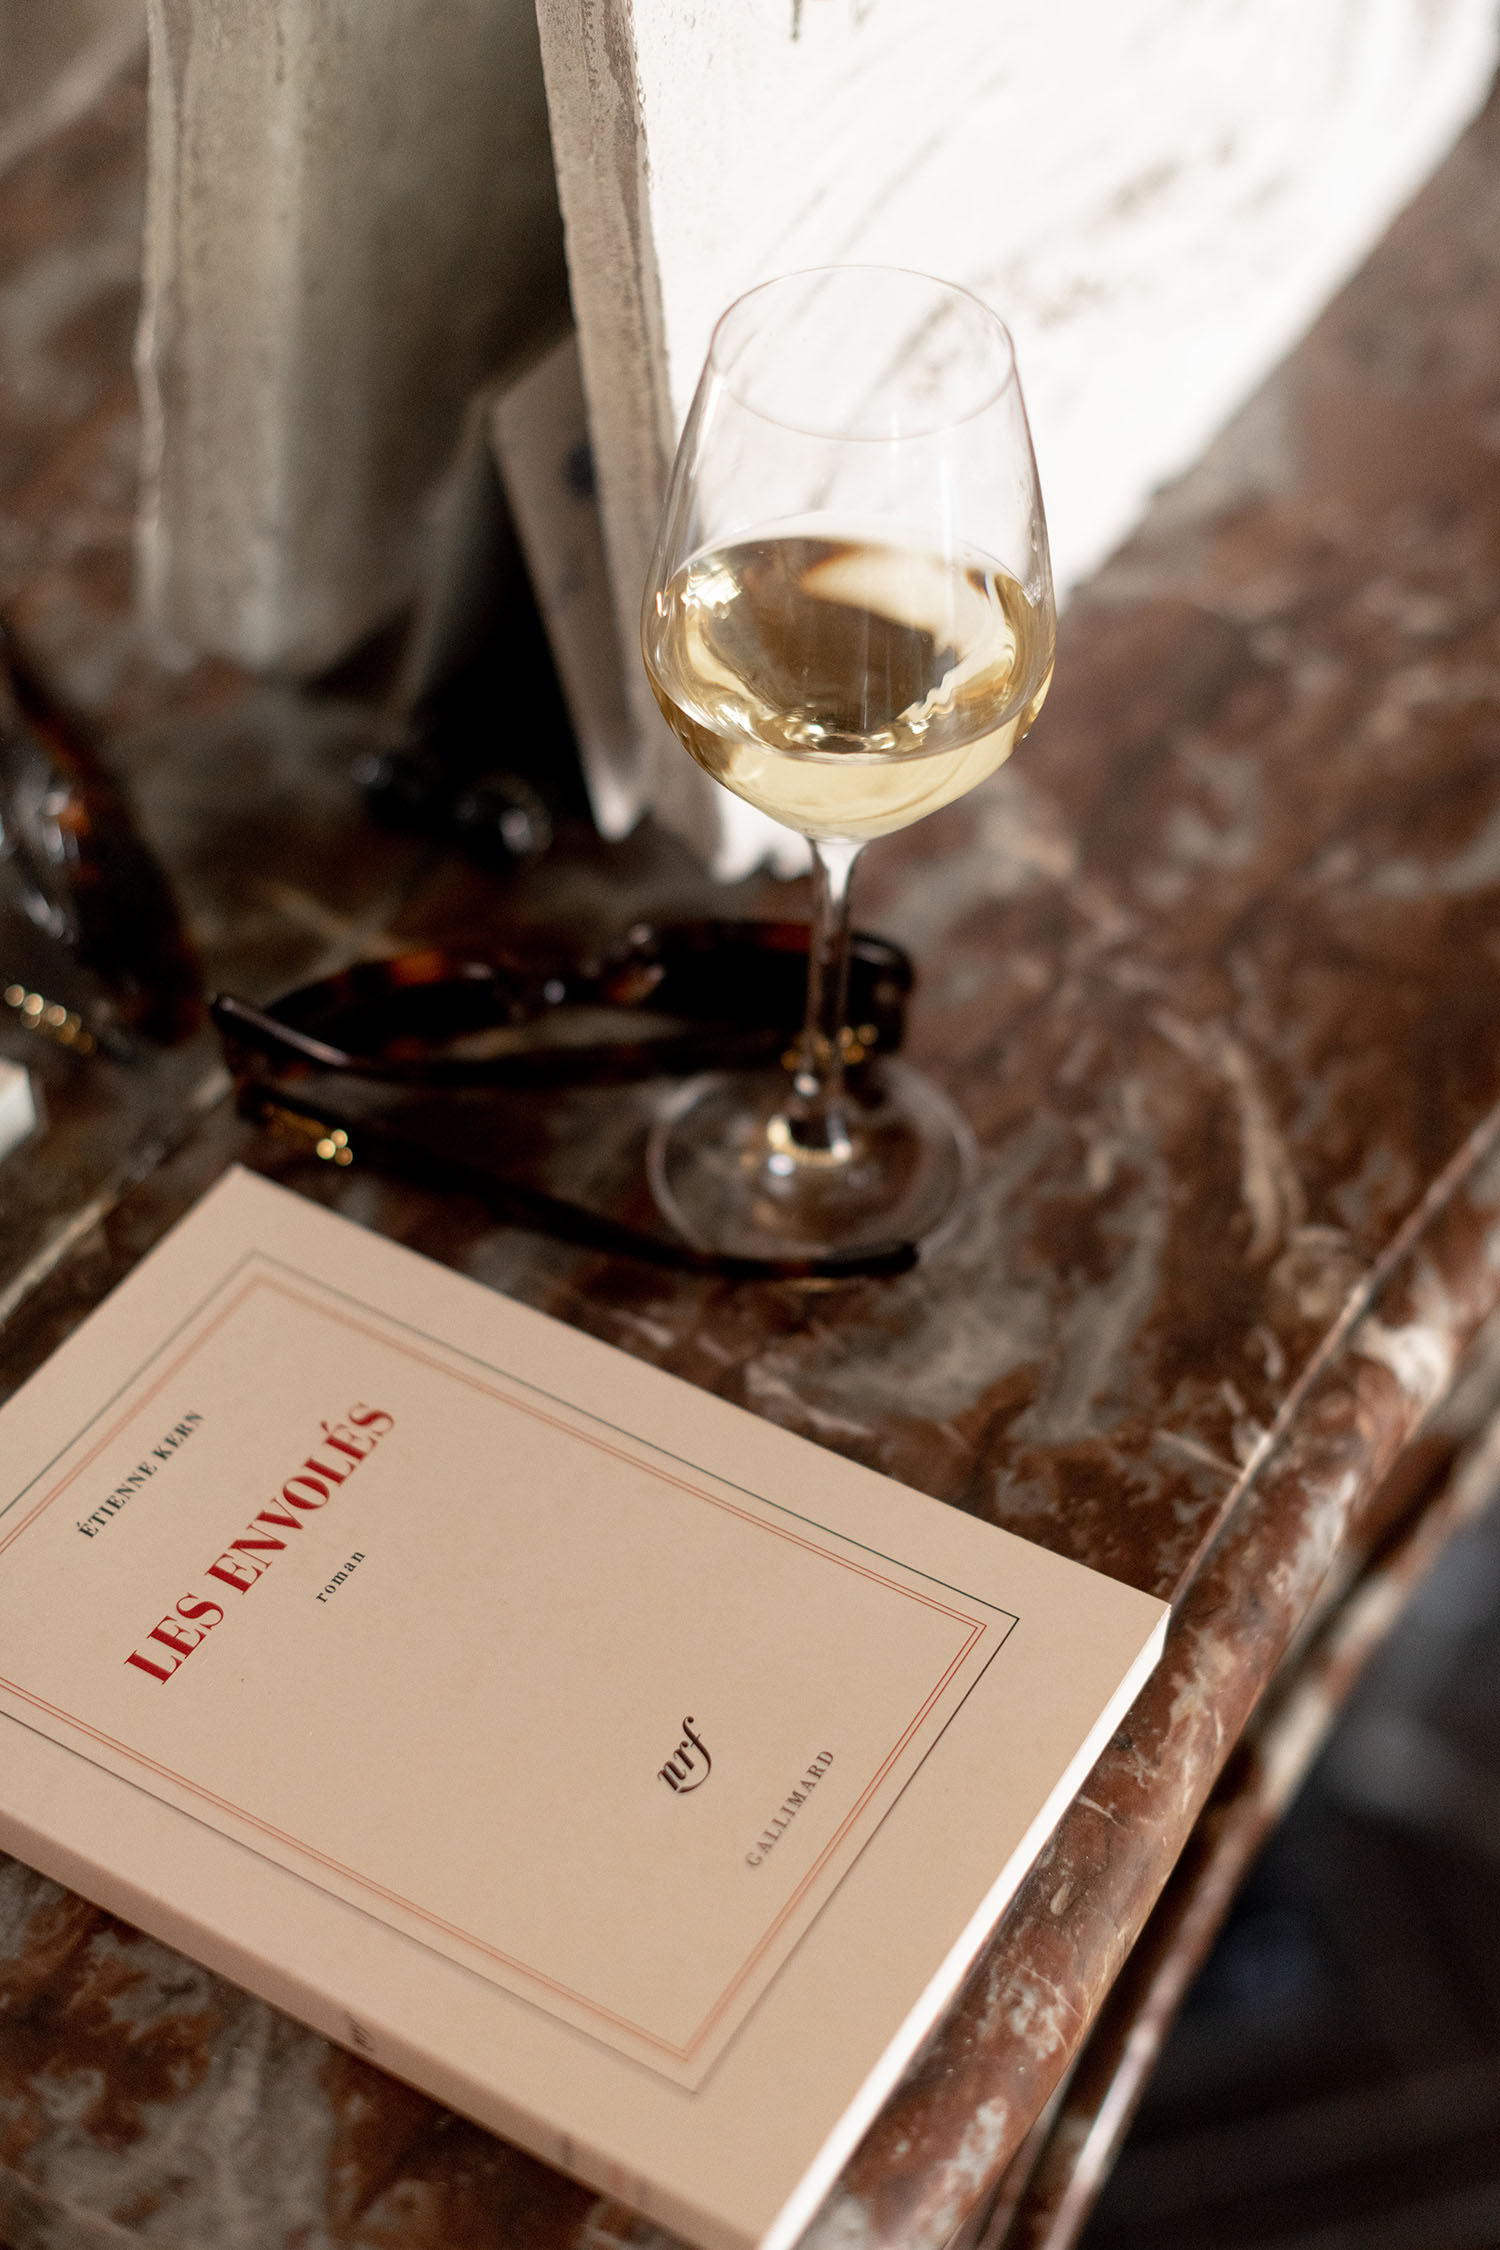 Coco & Voltaire - Les Envoles, roman d'Etienne Kern, avec verre de vin blanc